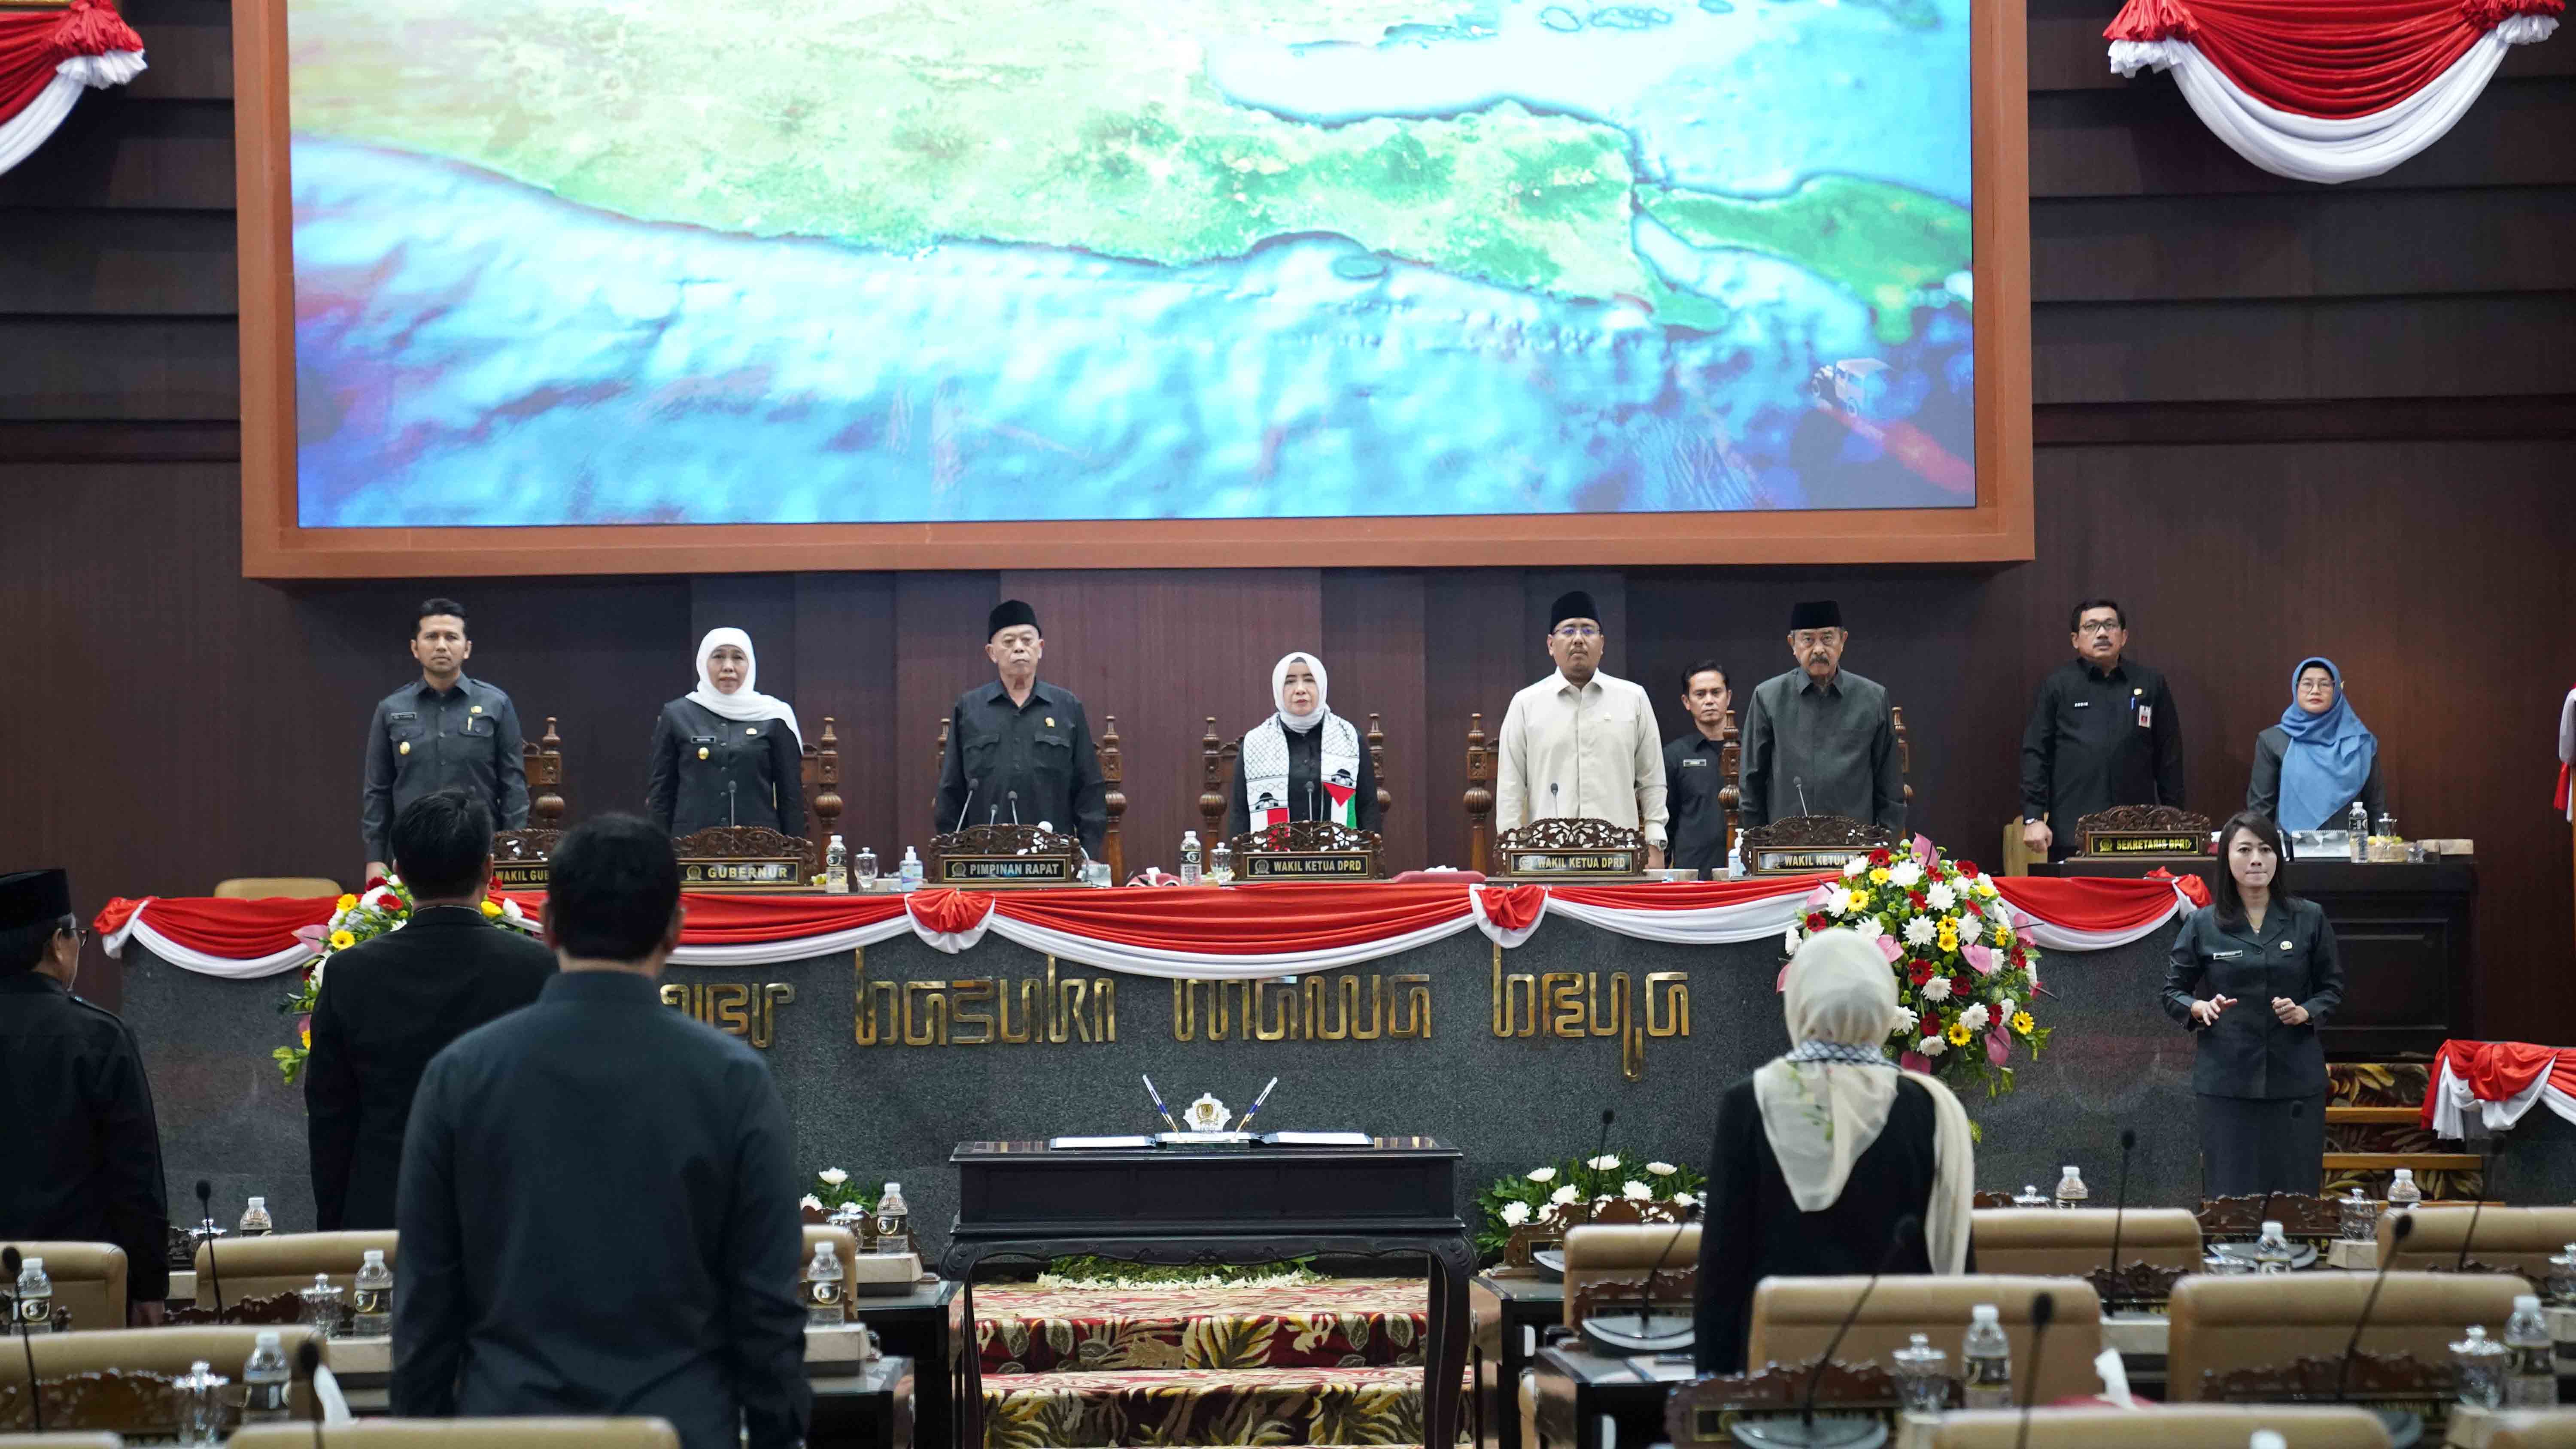 DPRD Jatim Segera Usulkan Tiga Nama Calon Pj Gubernur, Bisa Dimungkinkan dari Kalangan TNI-Polri